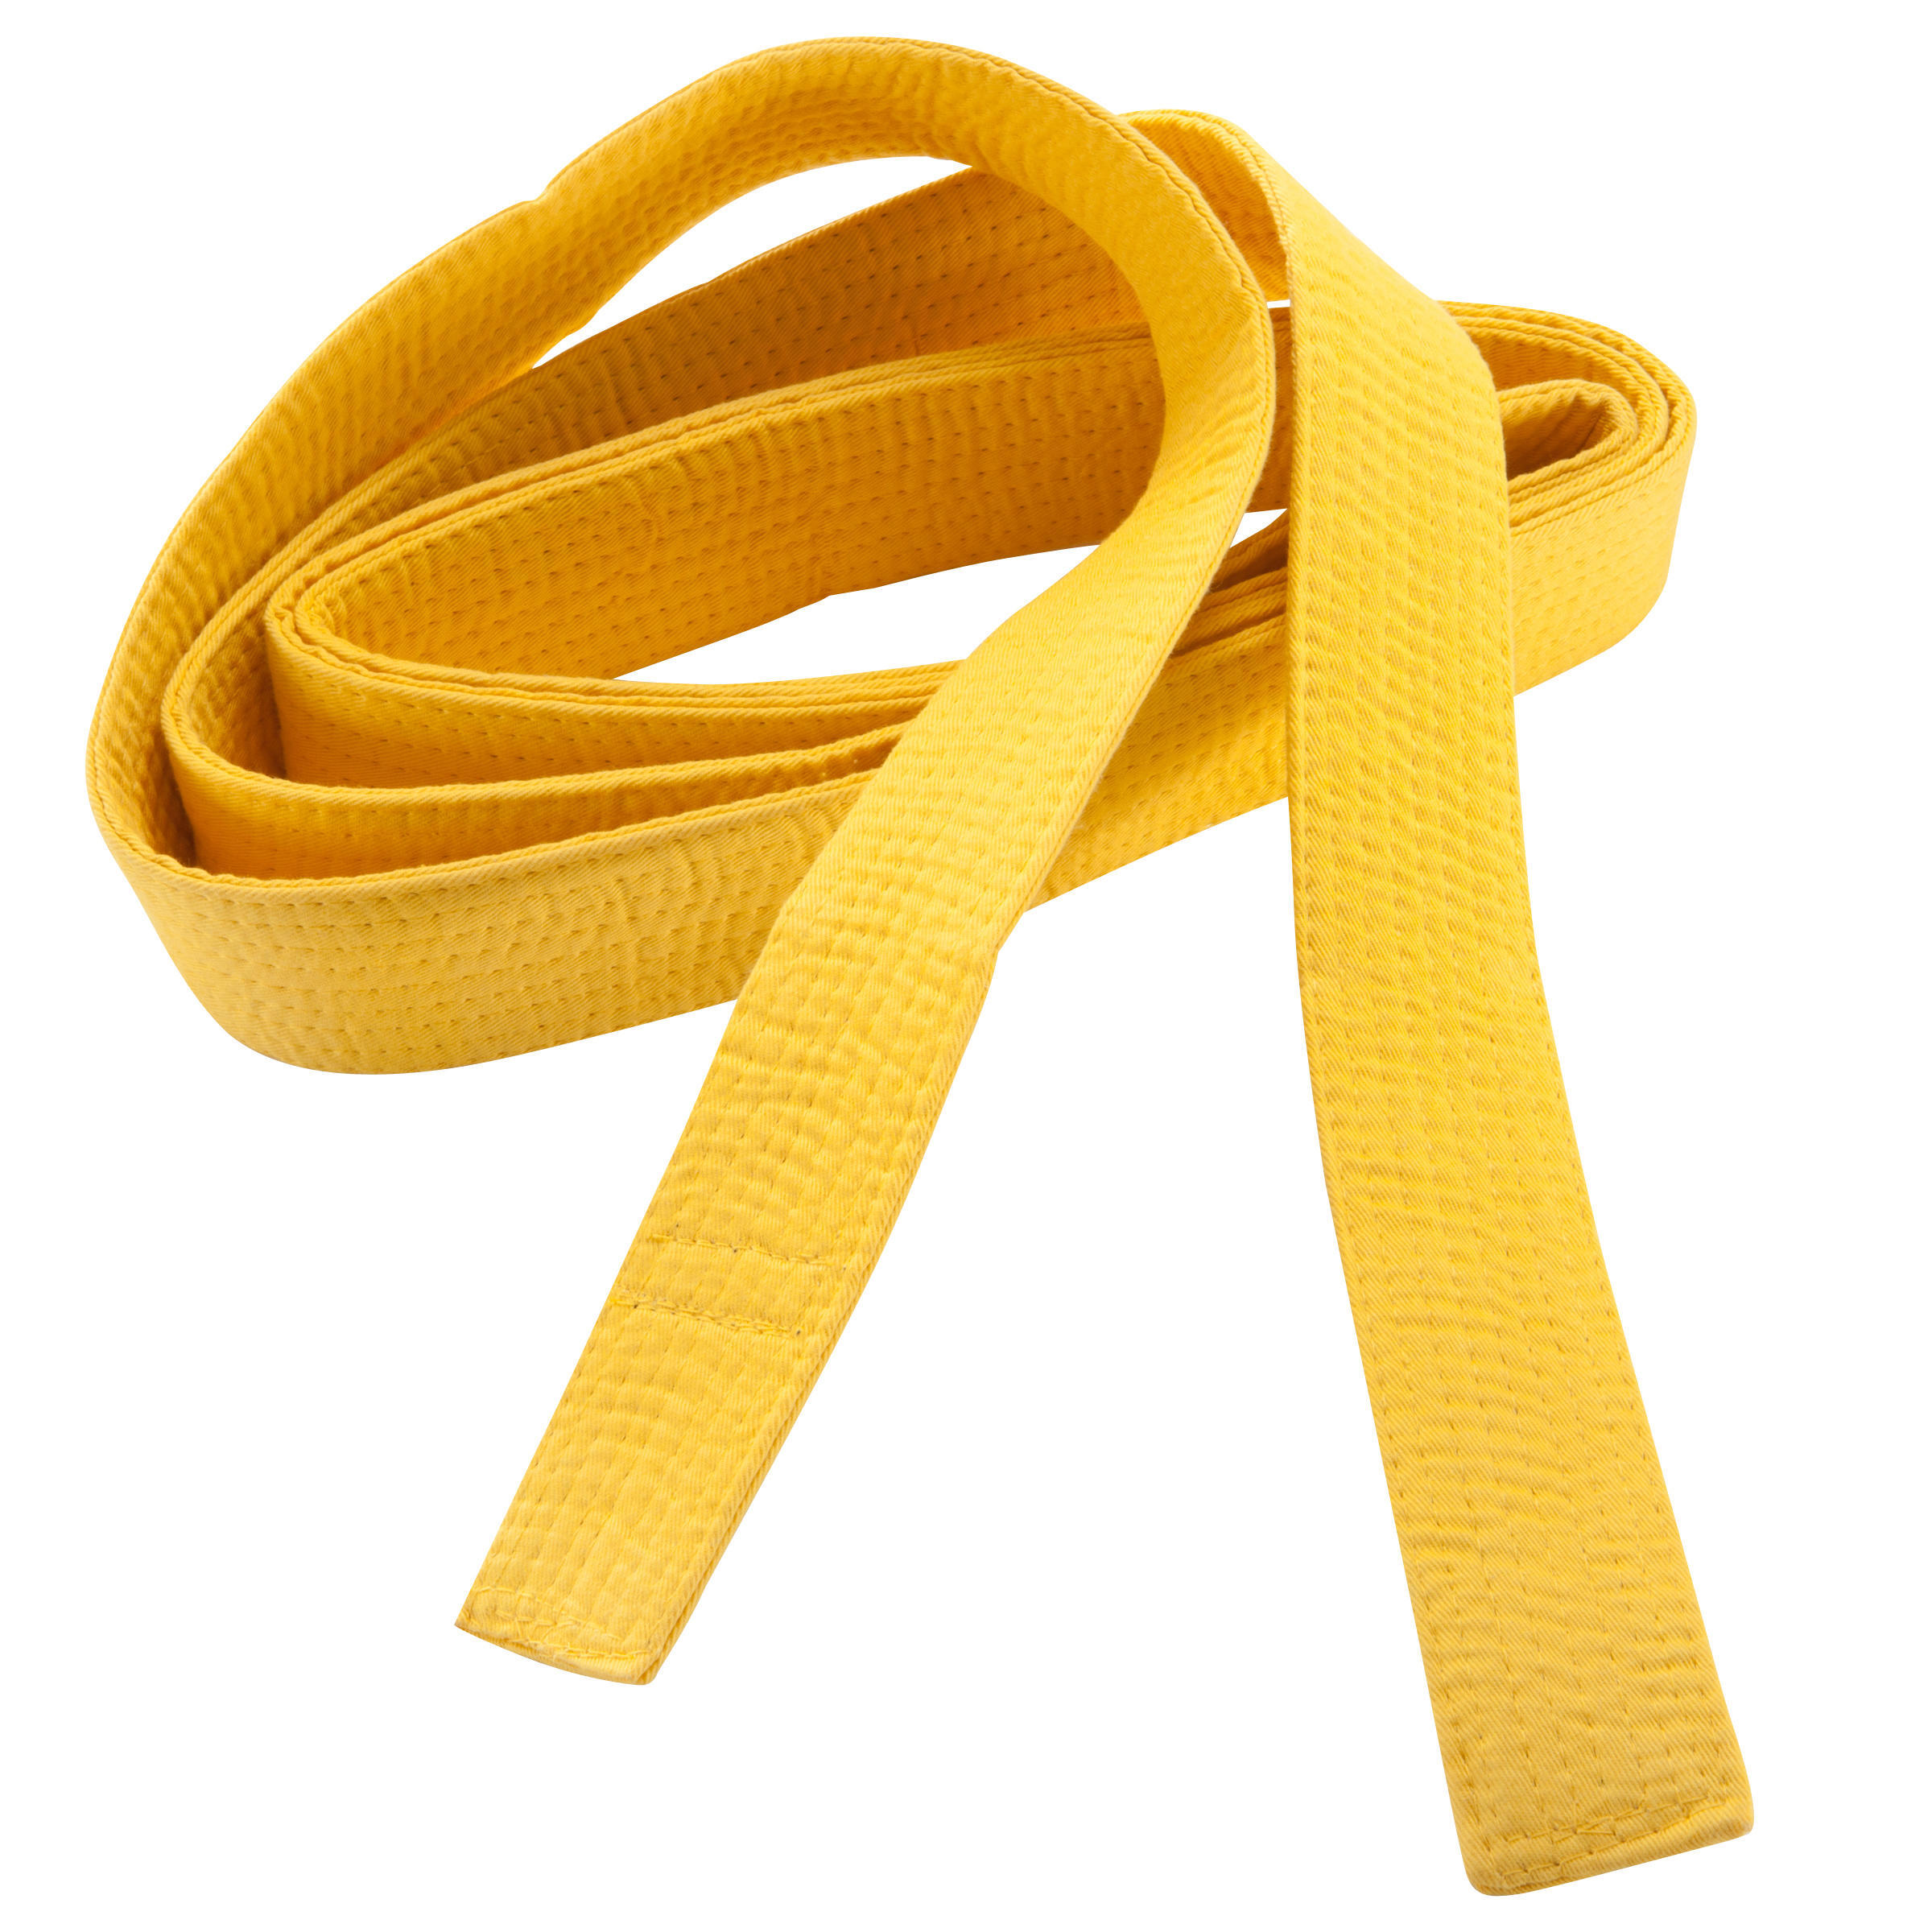 Пояс для единоборств 2,5 м желтый OUTSHOCK, солнечно-желтый пояса для единоборств adidas пояс для единоборств adidas club желтый